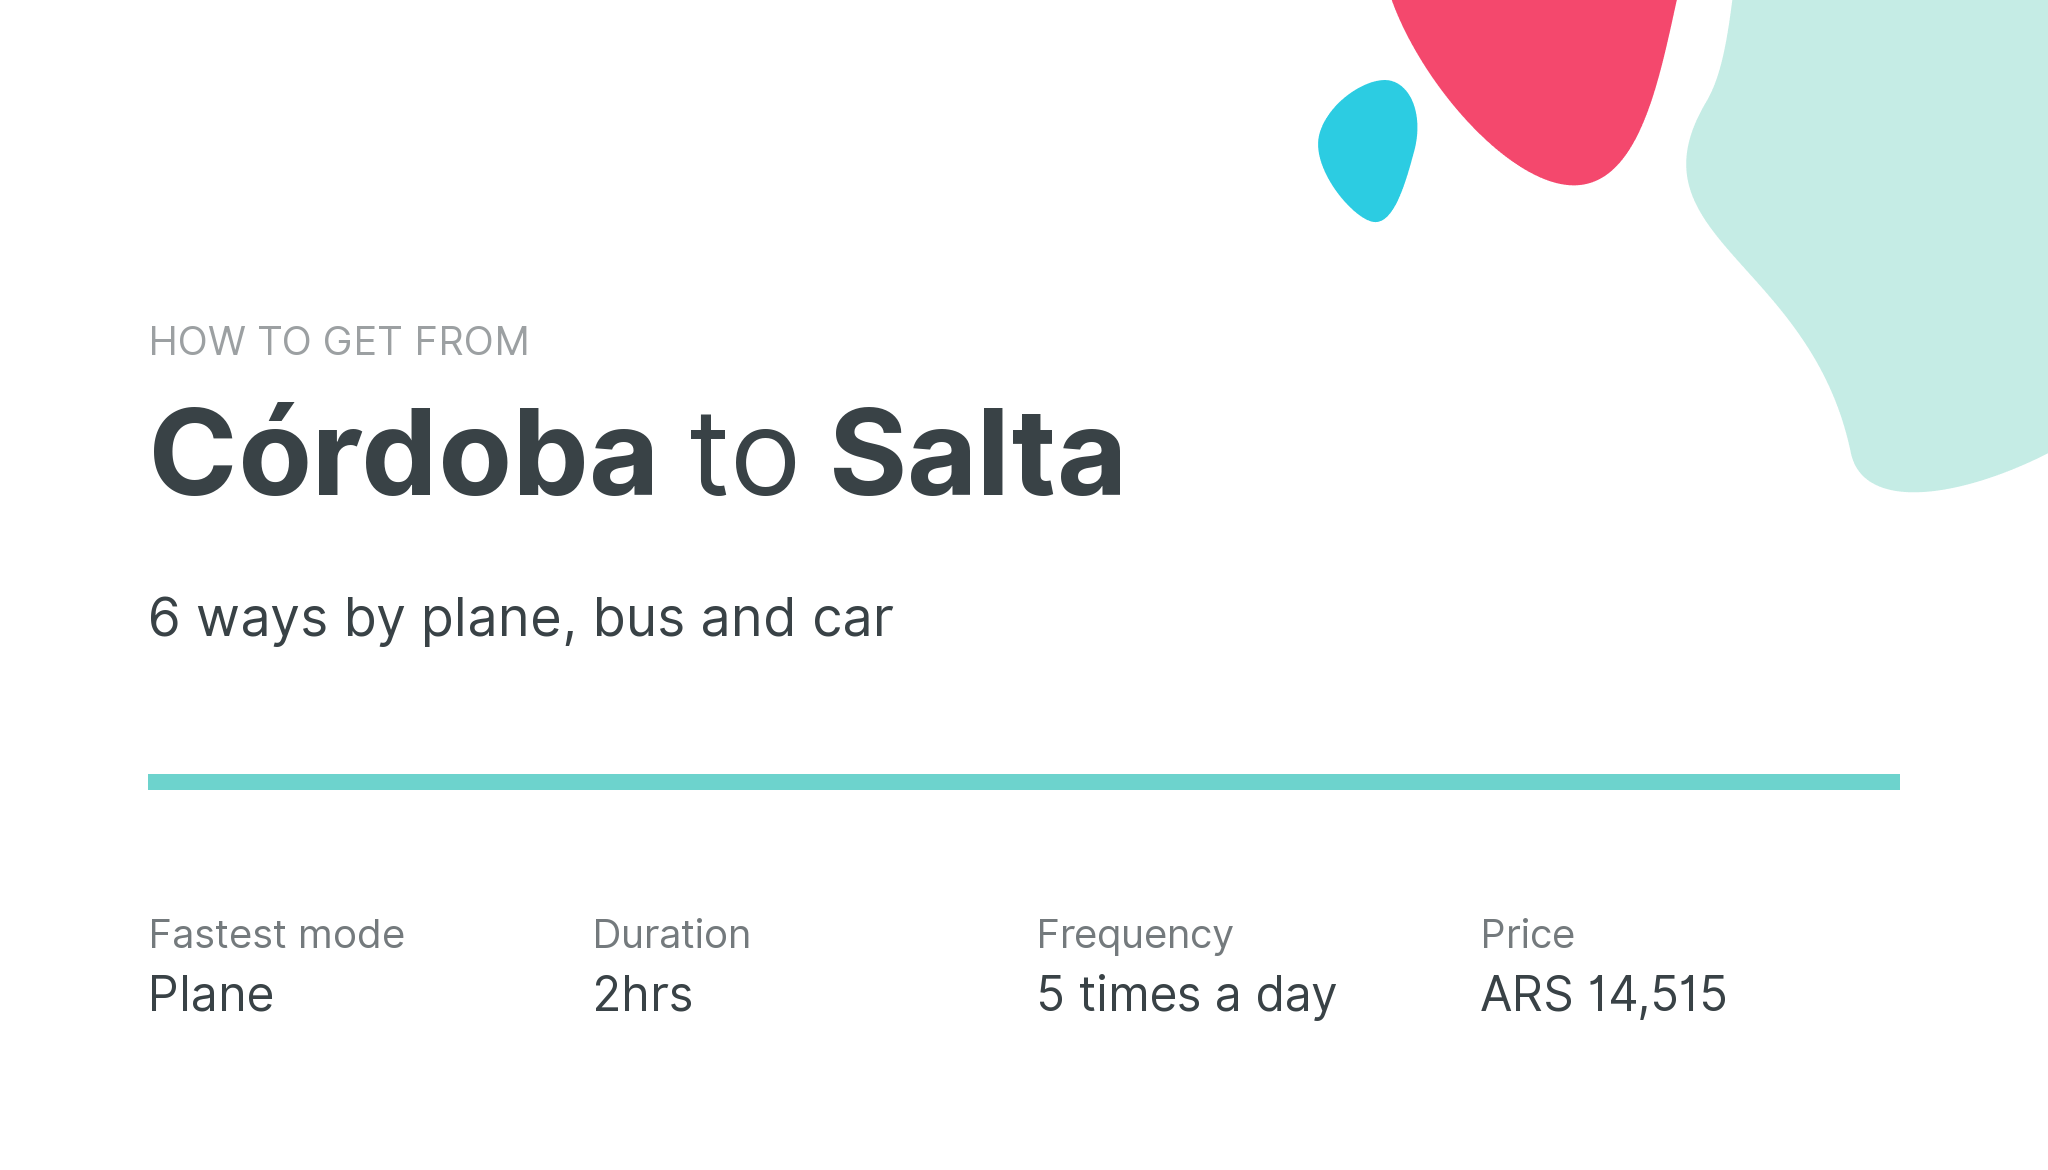 How do I get from Córdoba to Salta